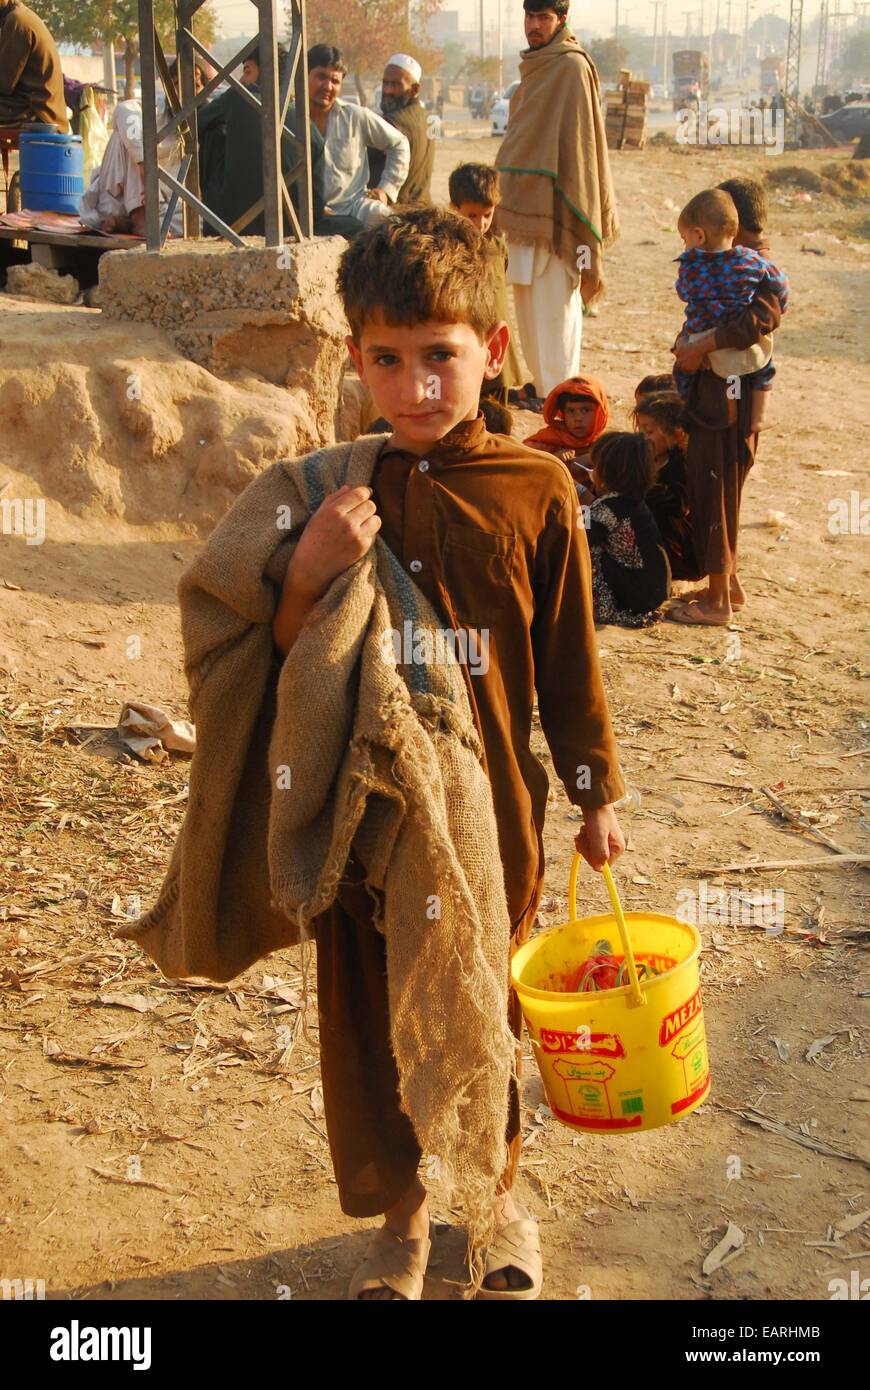 Islamabad, Pakistan. 20 Nov, 2014. Un garçon pakistanais promenades sur une rue à un bidonville sur la Journée mondiale de l'enfance à Islamabad, capitale du Pakistan, le 20 novembre, 2014. La Journée mondiale de l'enfance, qui tombe le 20 novembre chaque année, marque l'anniversaire du jour où l'Assemblée générale des Nations unies a adopté la Déclaration des droits de l'enfant en 1959 et de la Convention relative aux droits de l'enfant en 1989. Source : Xinhua/Alamy Live News Banque D'Images